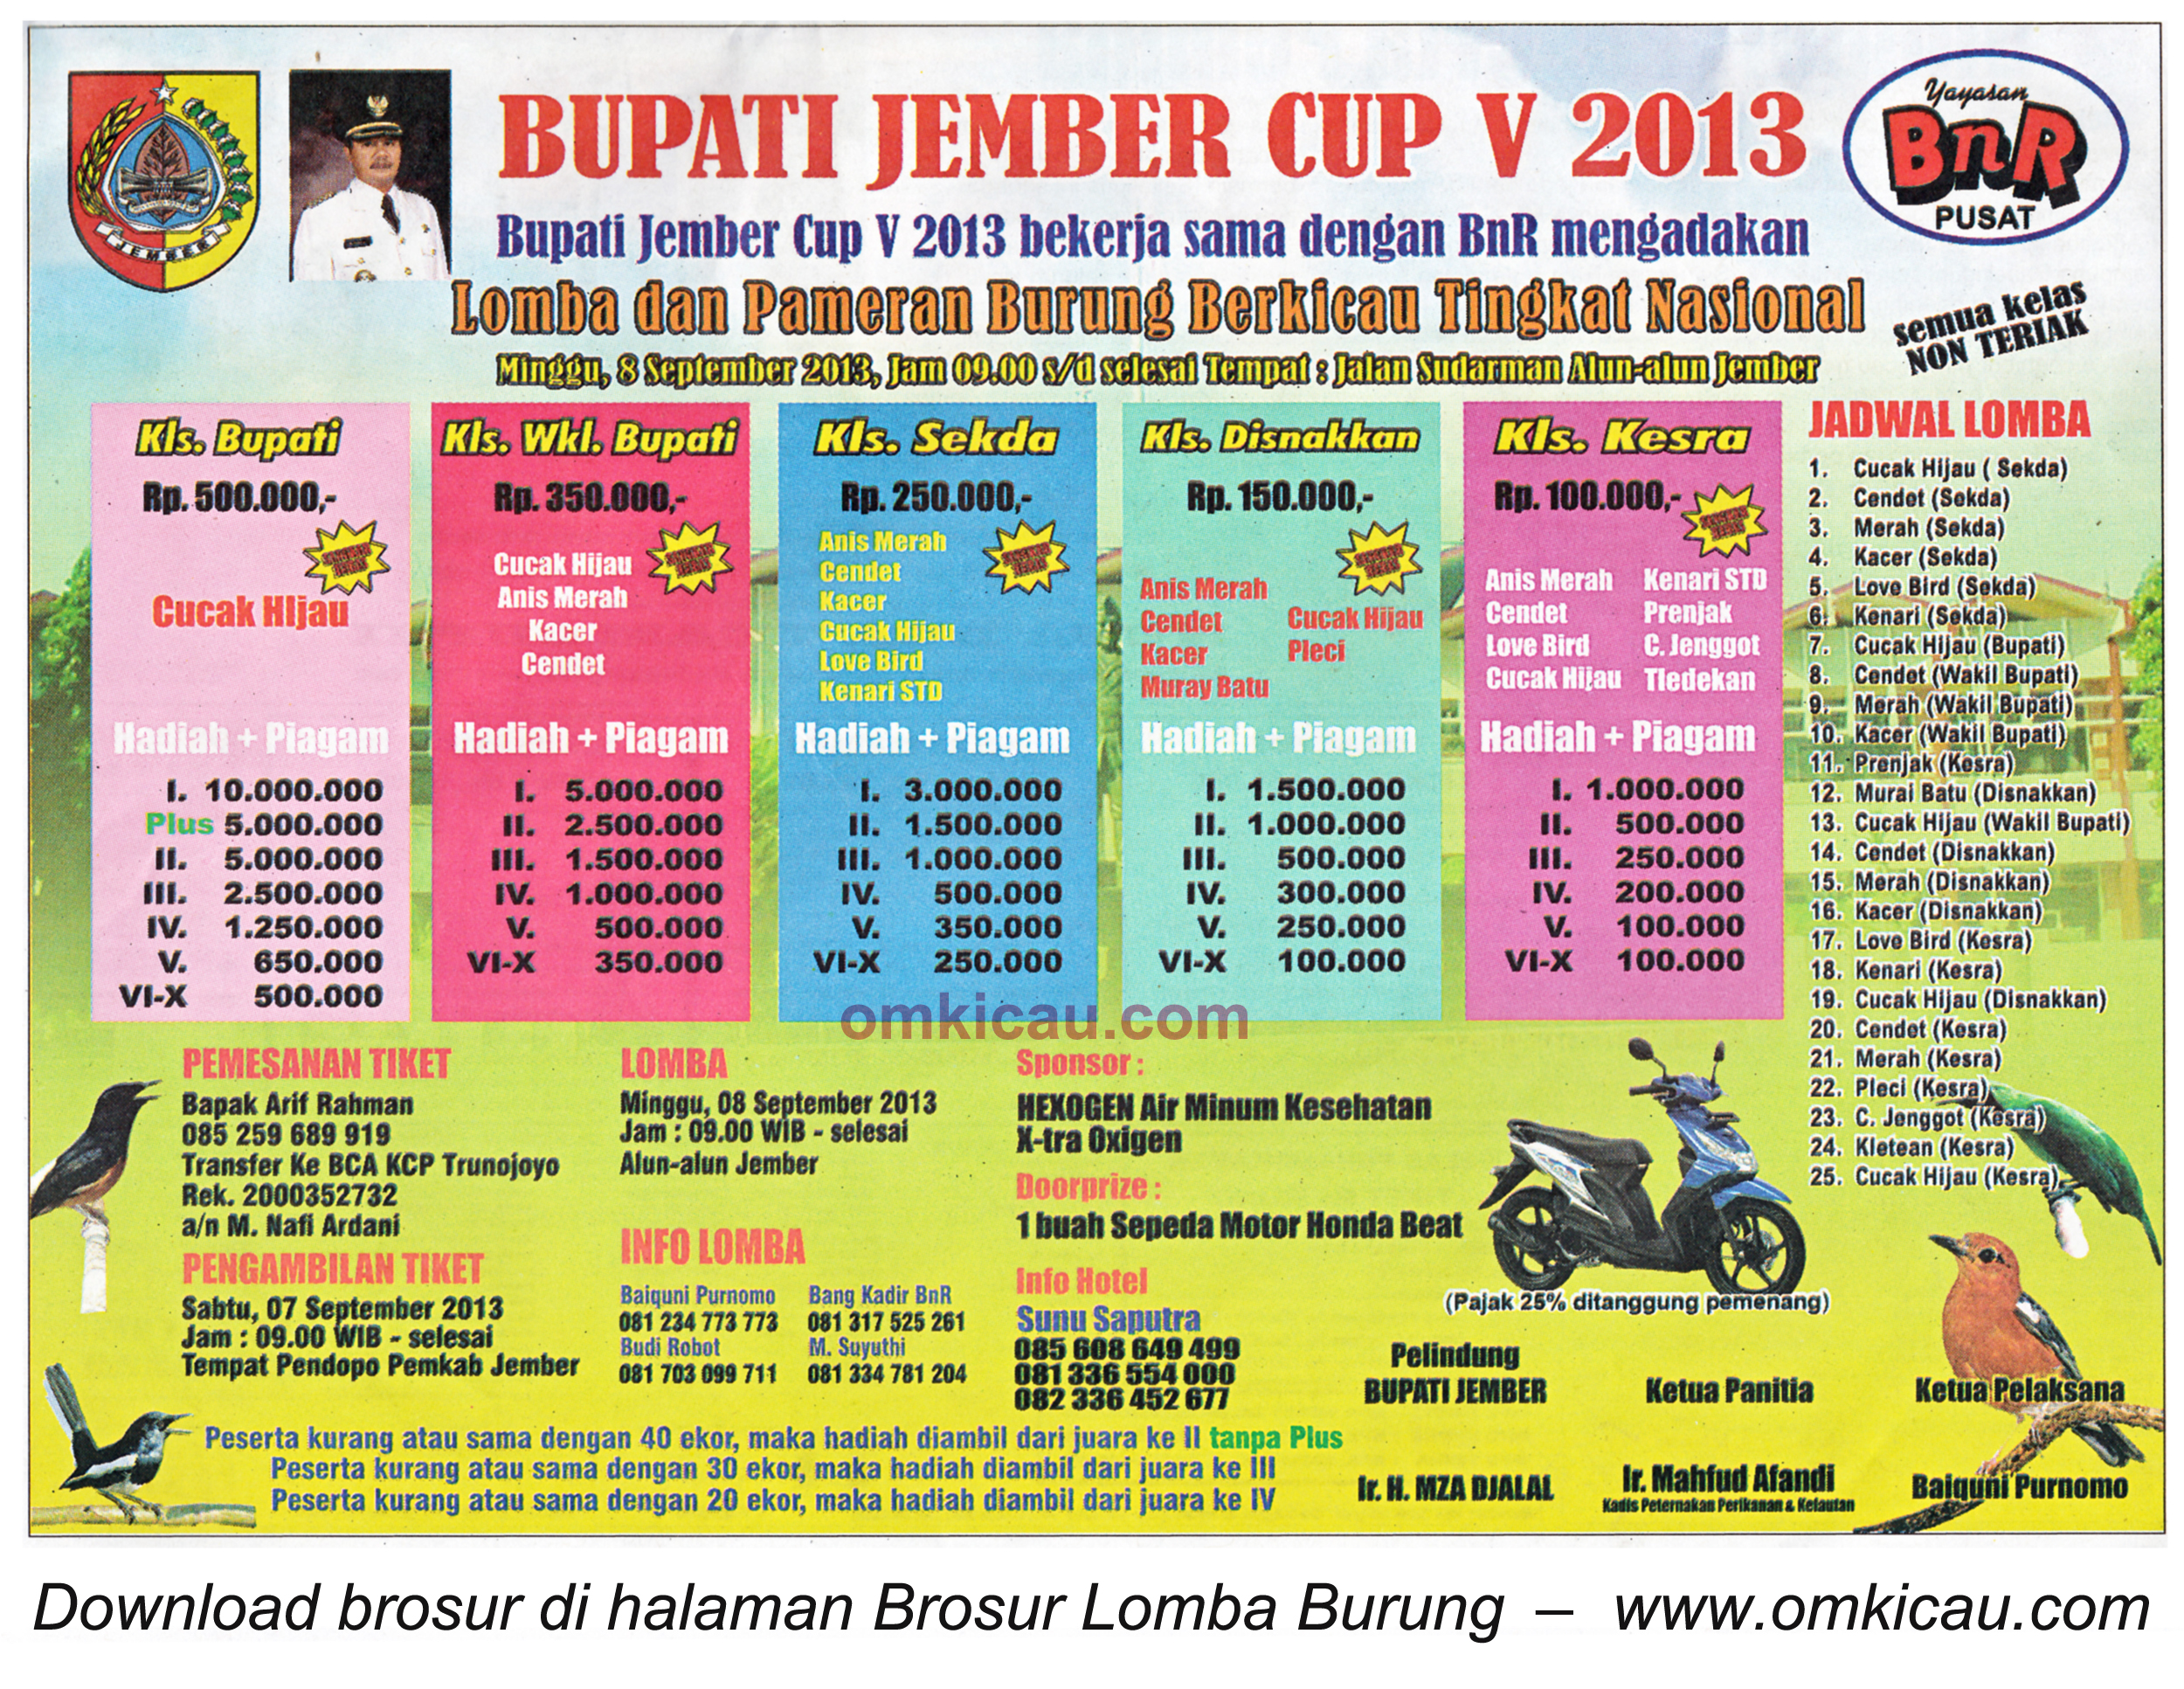 Brosur Lomba Burung Bupati Jember Cup V 8 Sept 2013